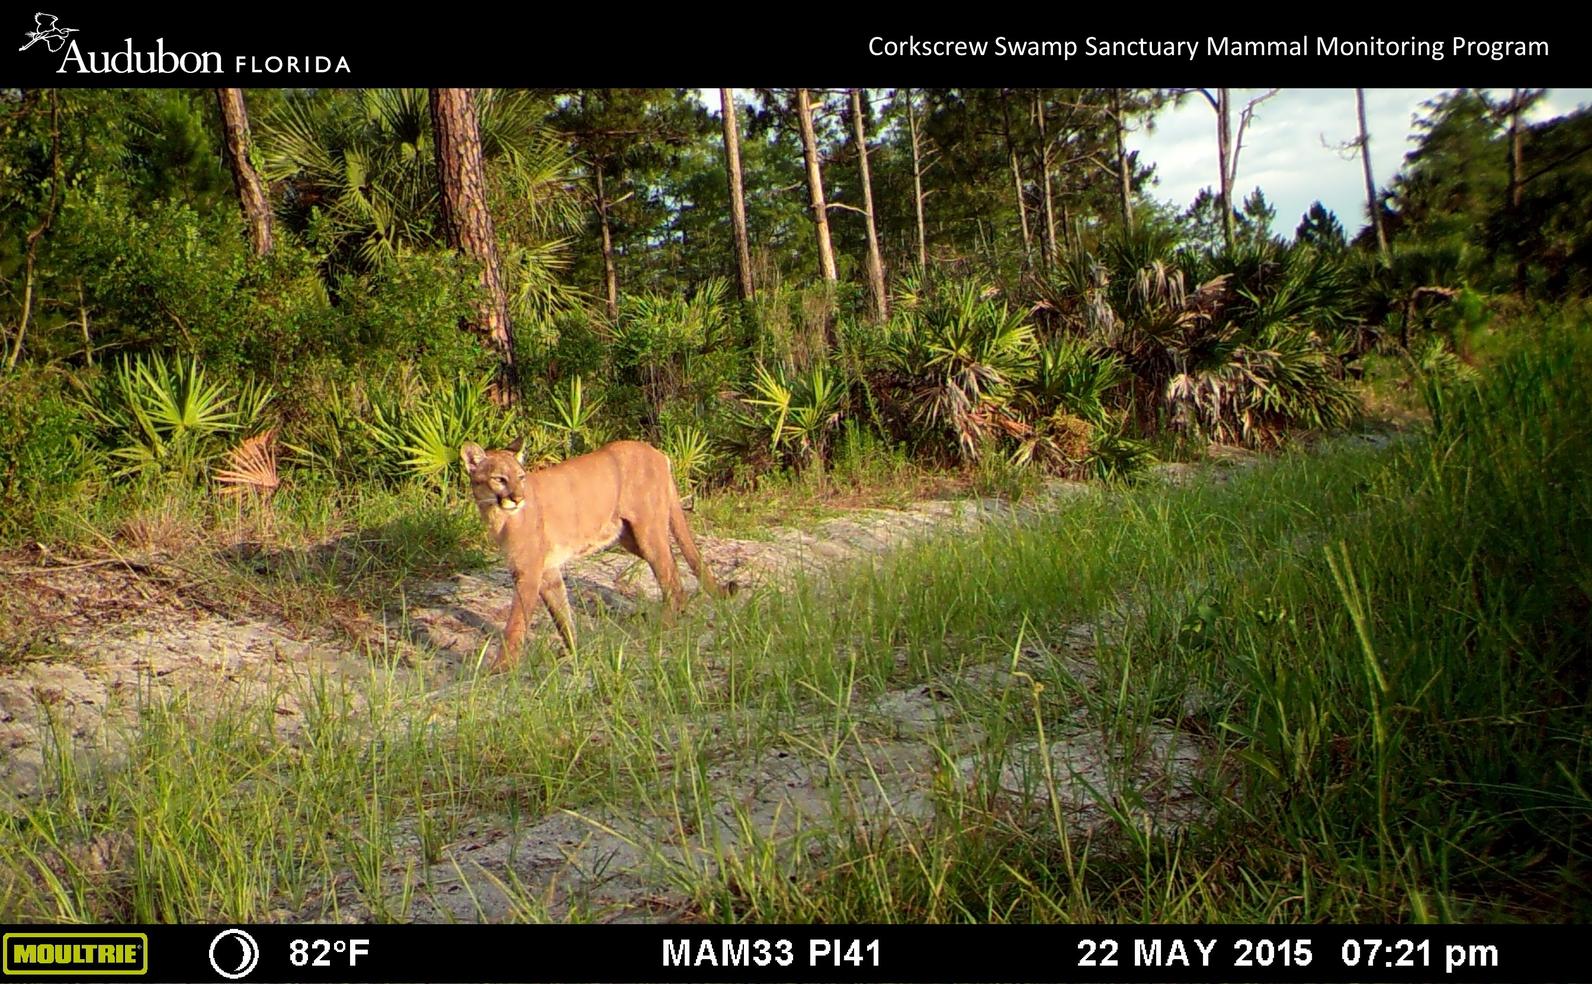 Florida panther at Corkscrew Swamp Sanctuary